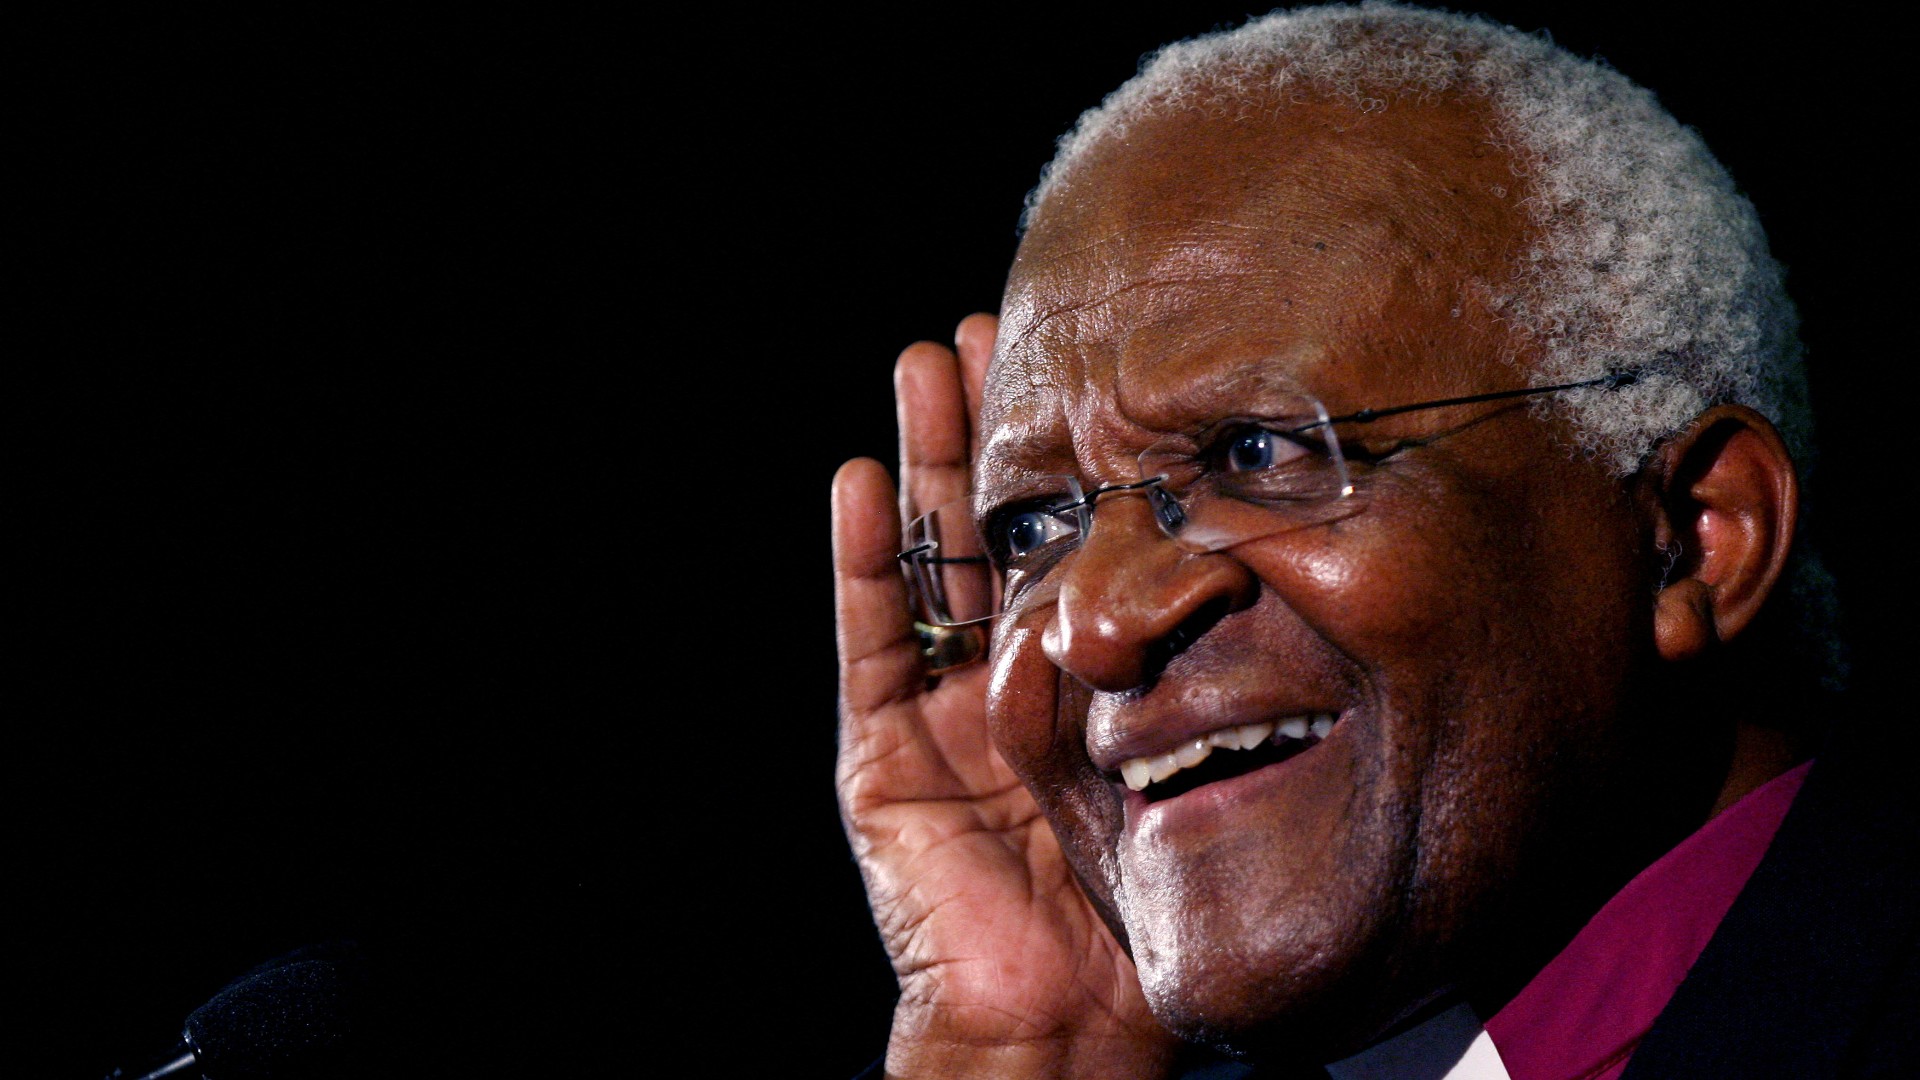 Ir al Video Desmond Tutu, un activista incansable contra la segregación racial